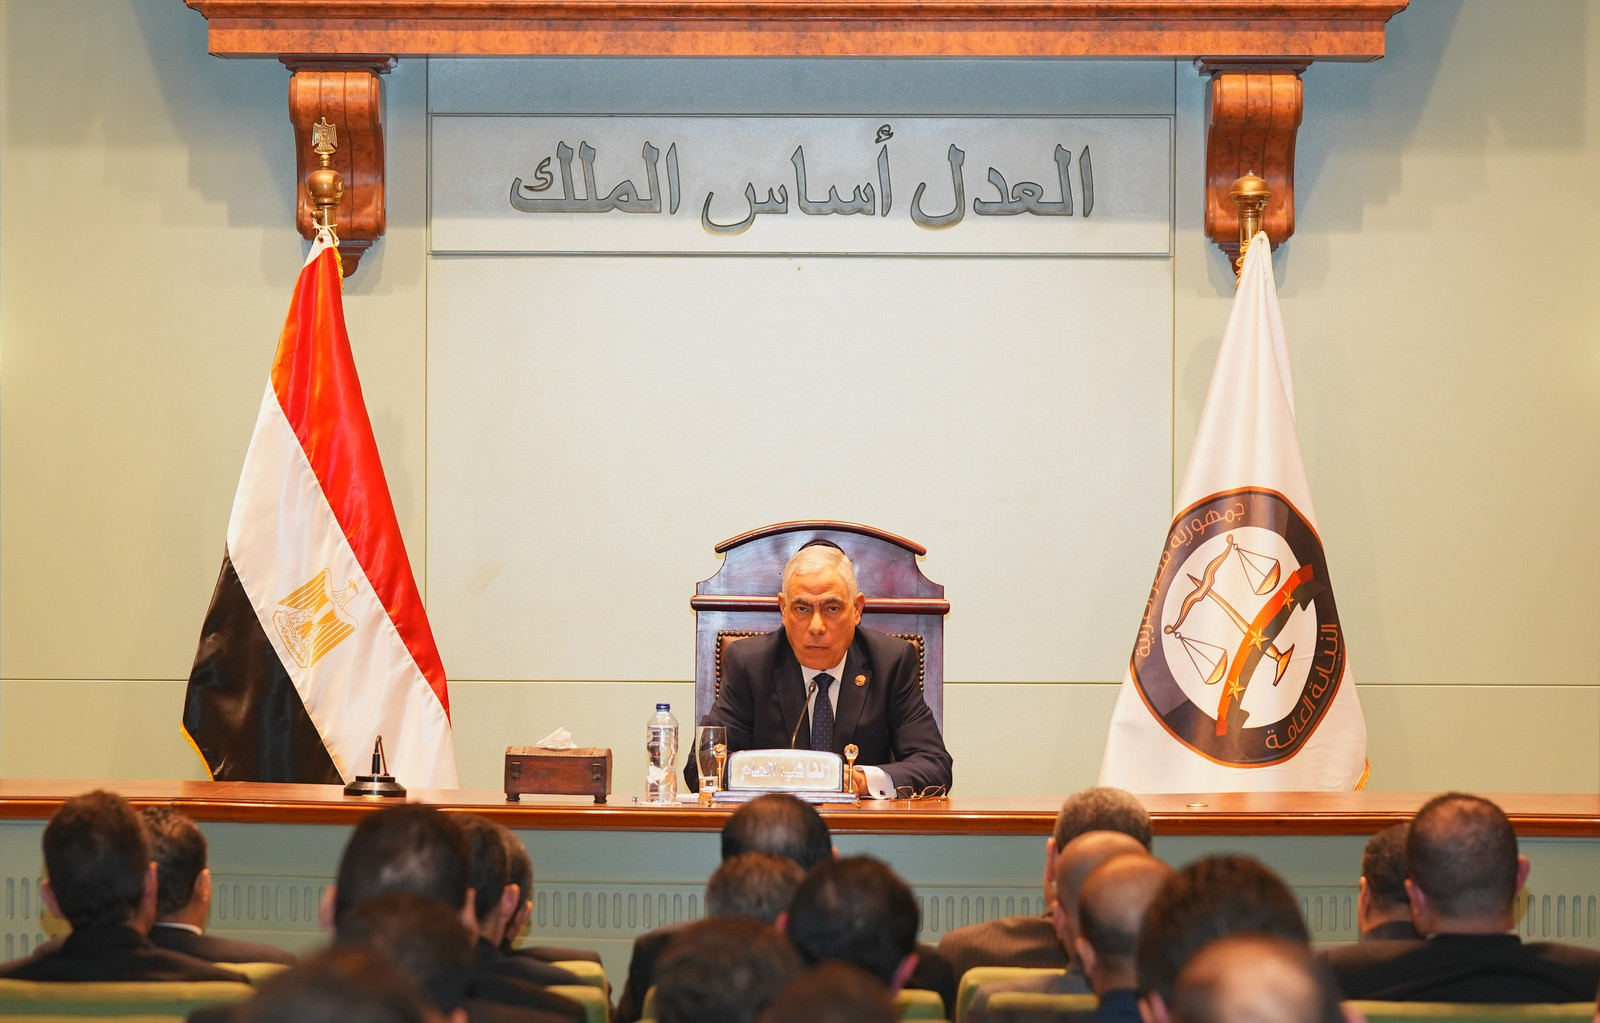 النائب العام يزور نيابة الإسكندرية لتعزيز التعاون وضمان حقوق المواطن